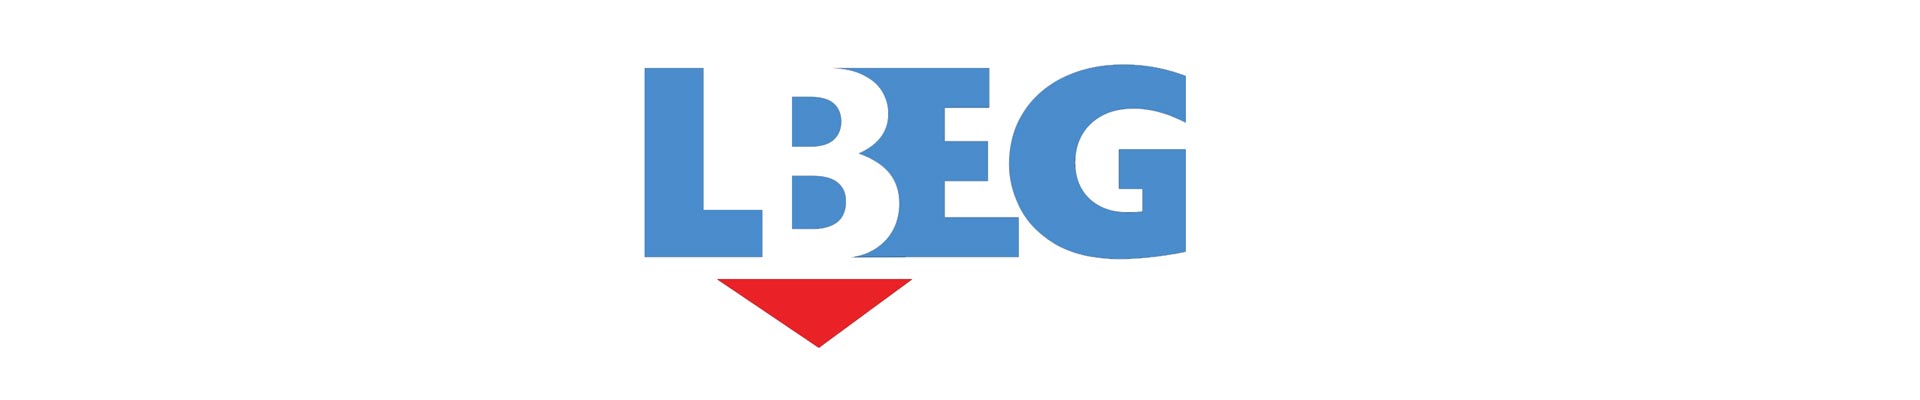 LBEG erteilt Erlaubnis zur Aufsuchung von Erdwärme – Grafschaft Bentheim